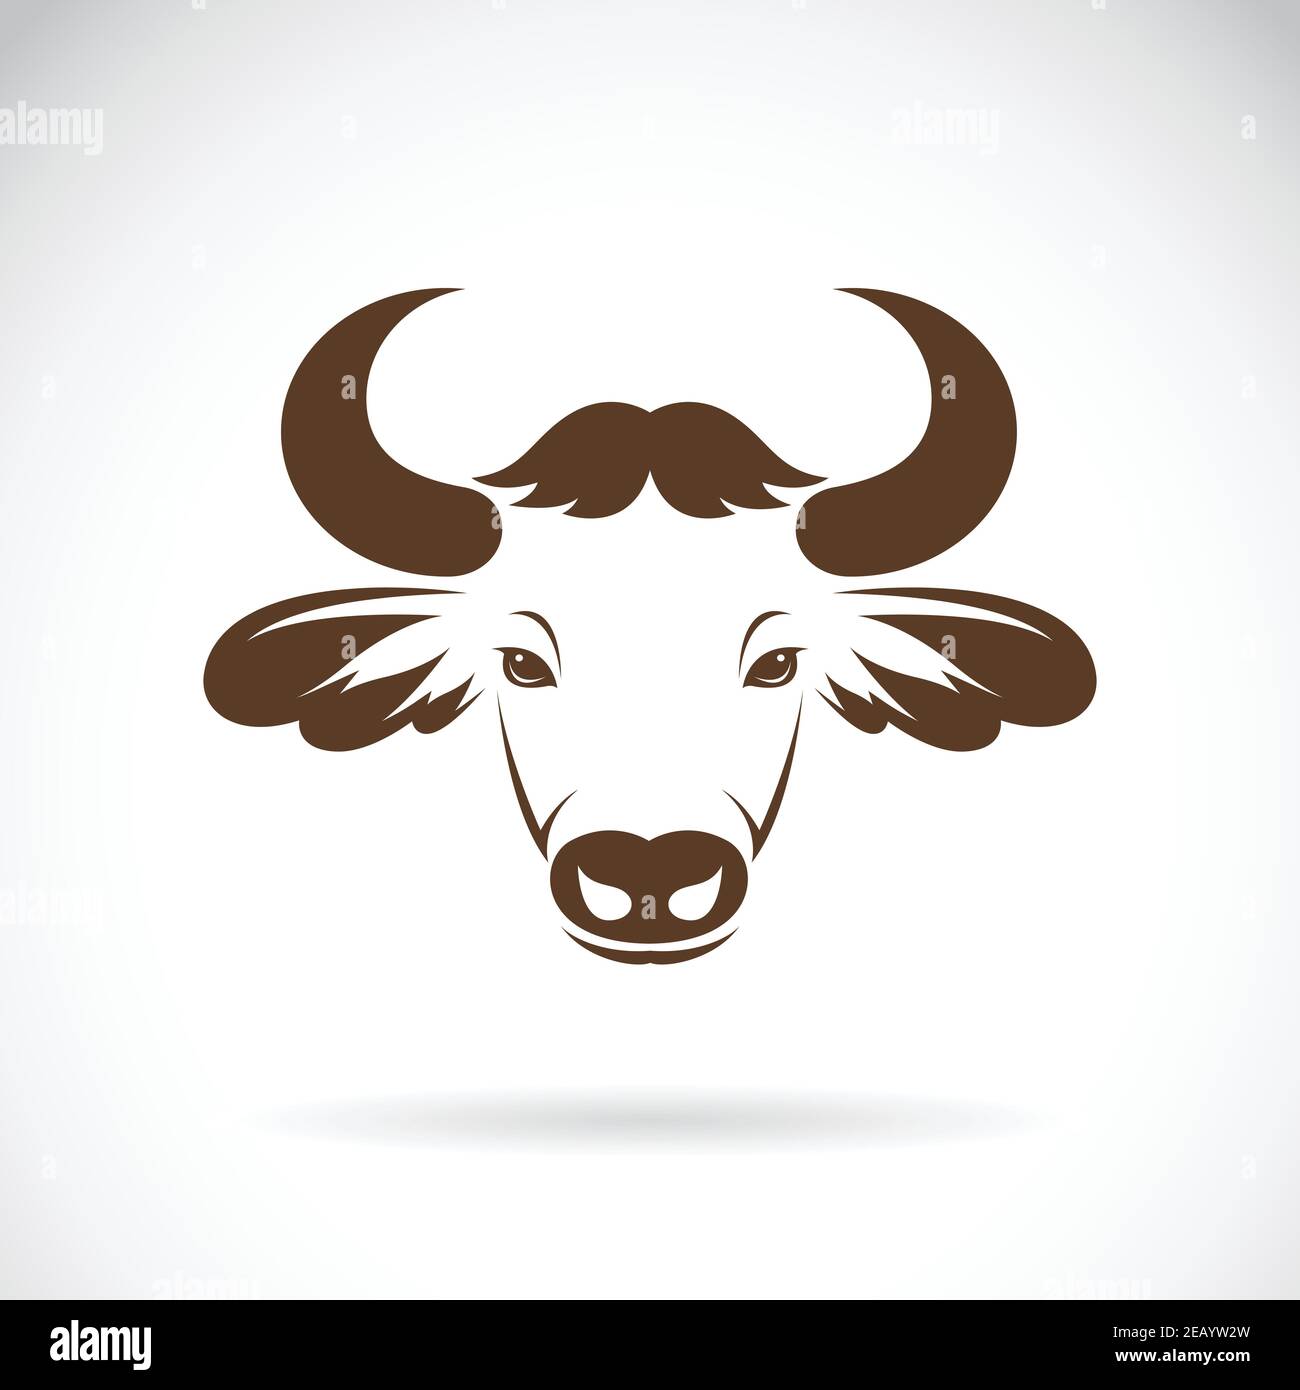 Vecteur de la tête de bison sur fond blanc., vecteur de la tête de bison pour votre conception. Illustration vectorielle superposée facile à modifier. Animaux sauvages. Illustration de Vecteur